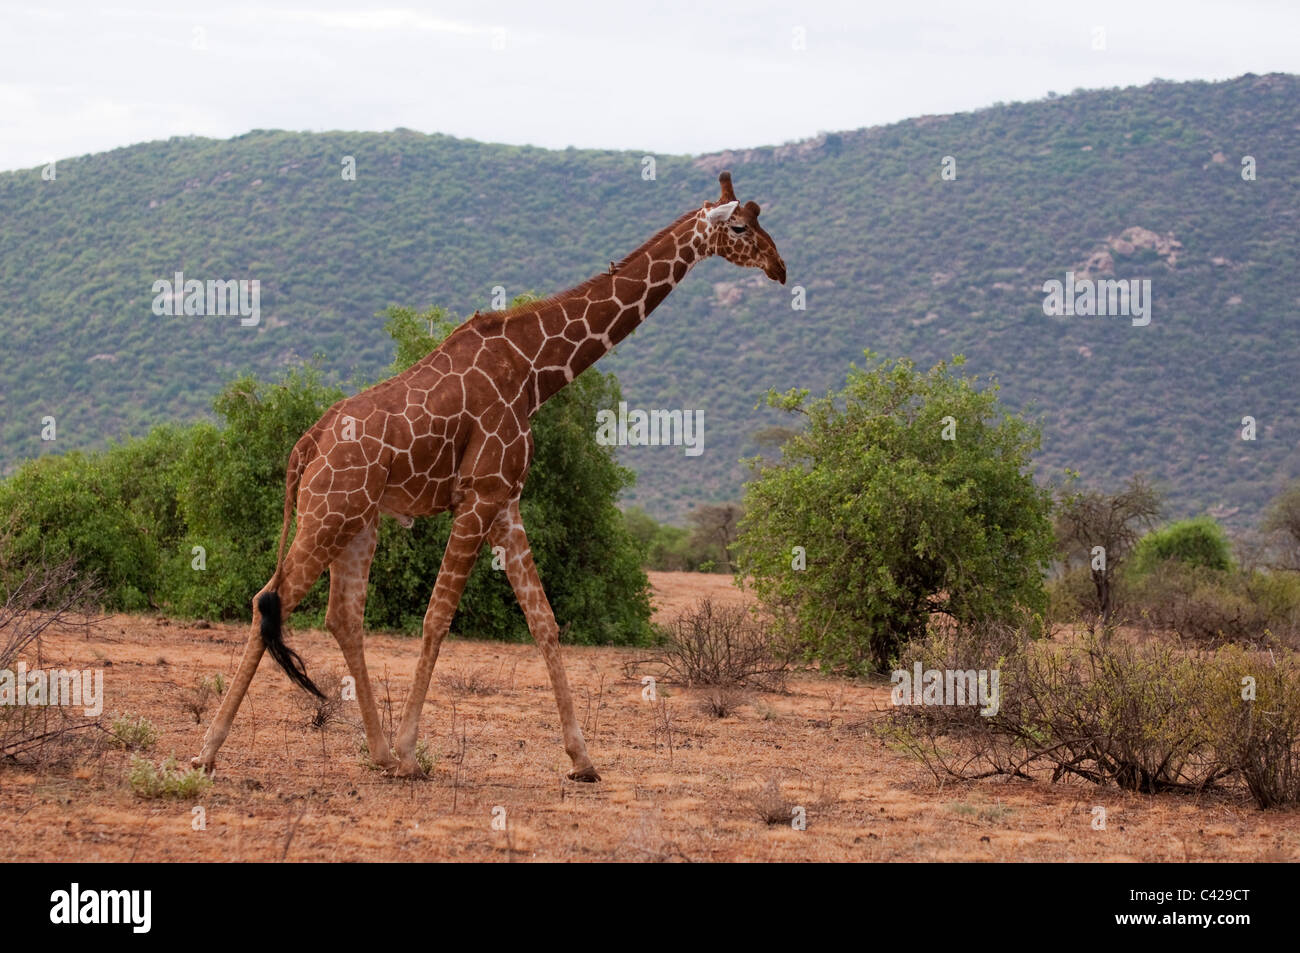 Jirafa reticulada (Giraffa camelopardalis reticulata), Parque Nacional de Samburu, en Kenya. Foto de stock